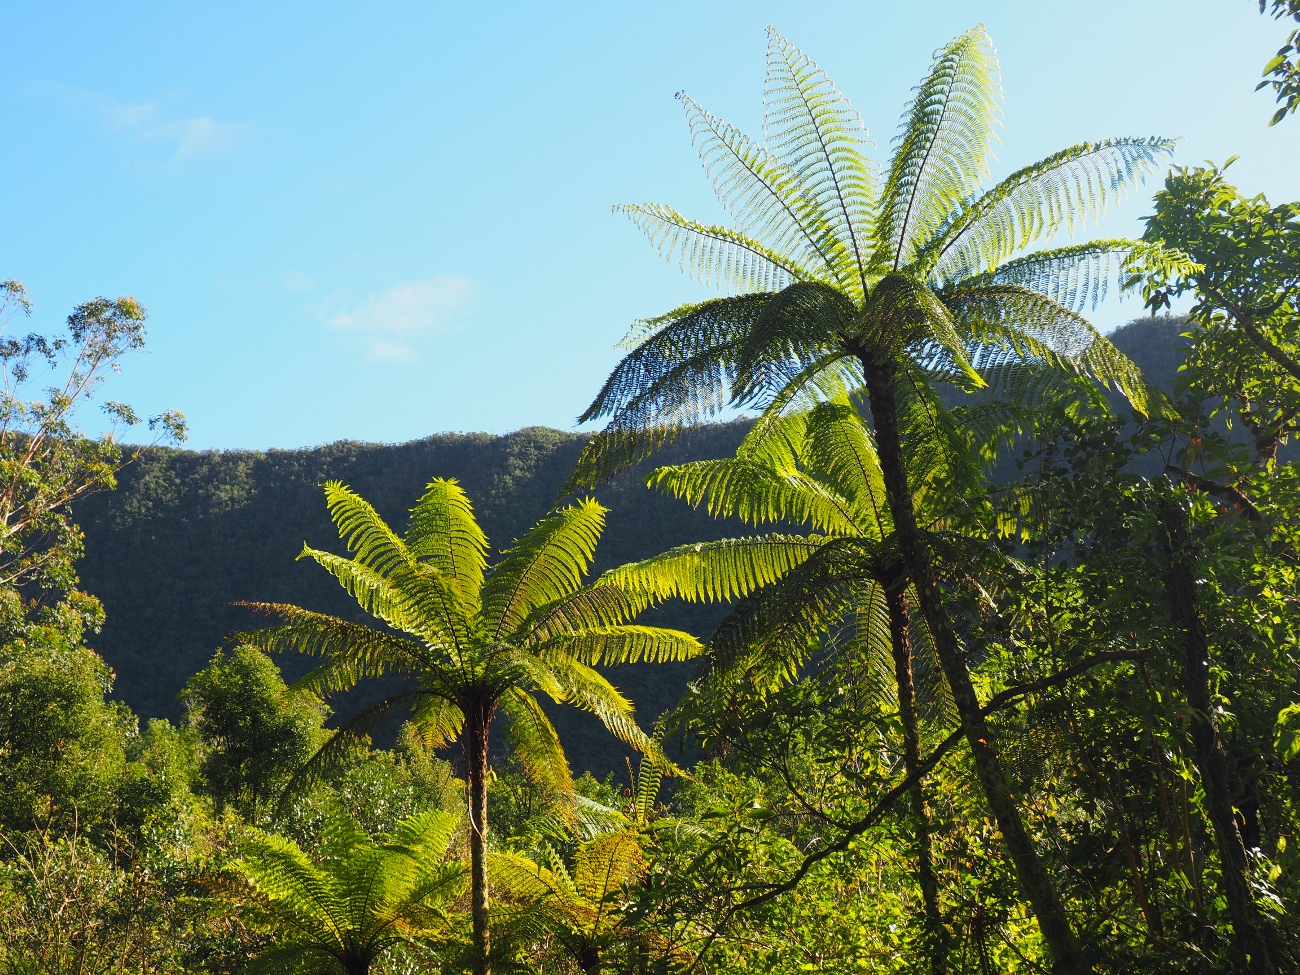 Les fougères arborescentes de la Réunion